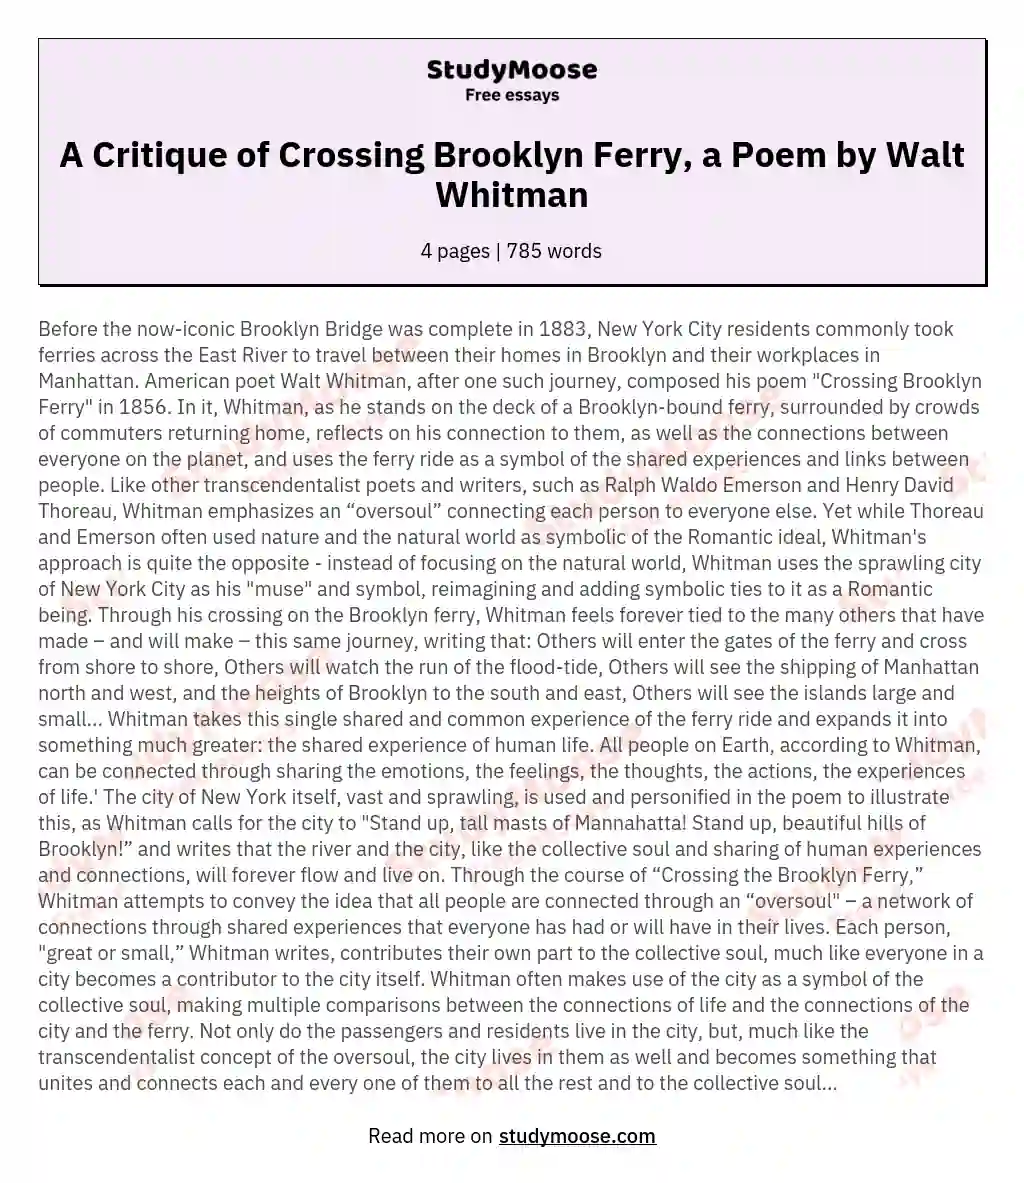 A Critique of Crossing Brooklyn Ferry, a Poem by Walt Whitman essay